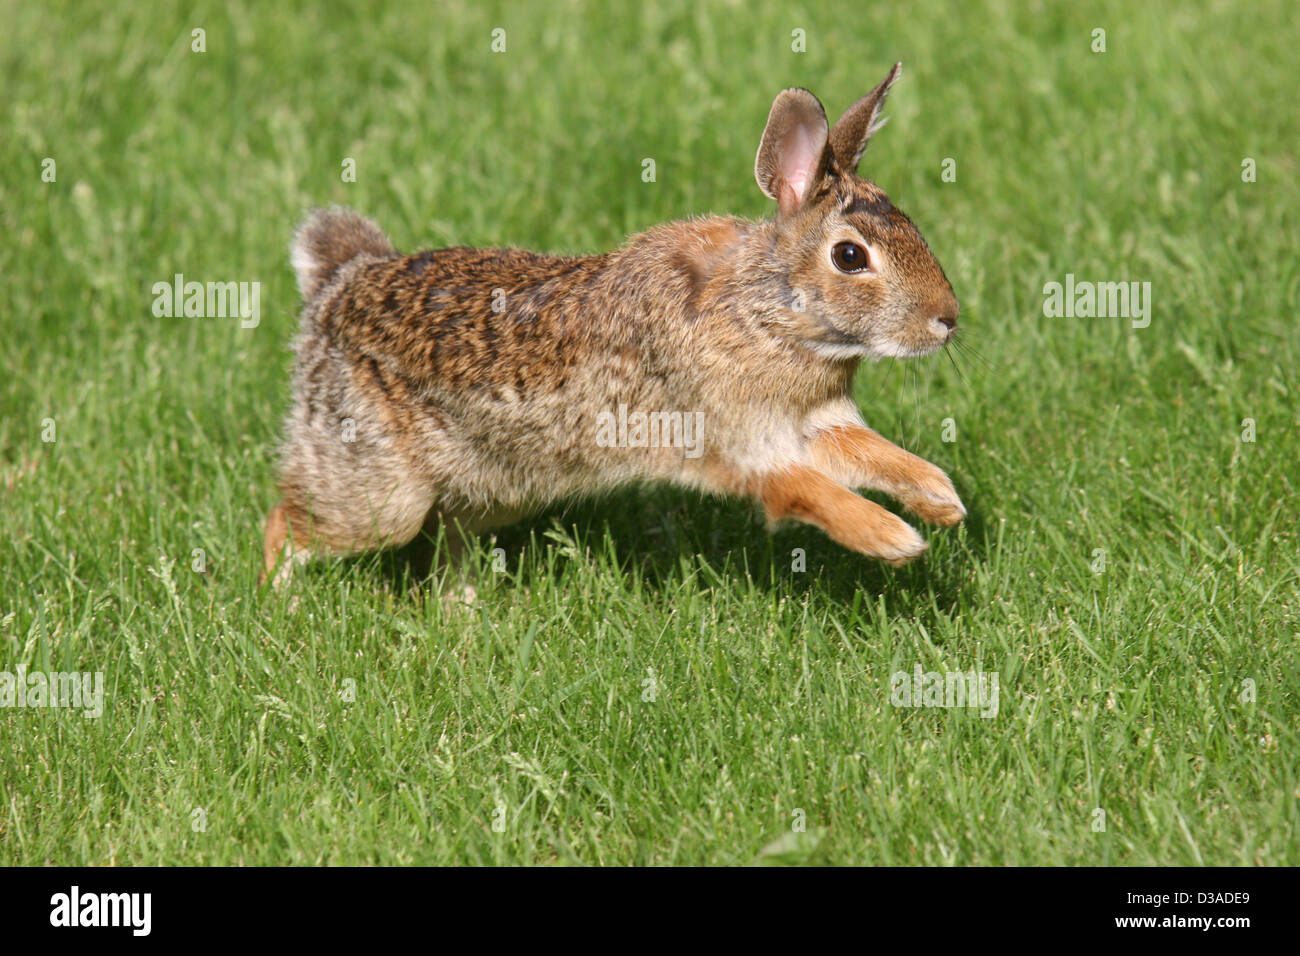 rabbit bunny hop hopping Stock Photo